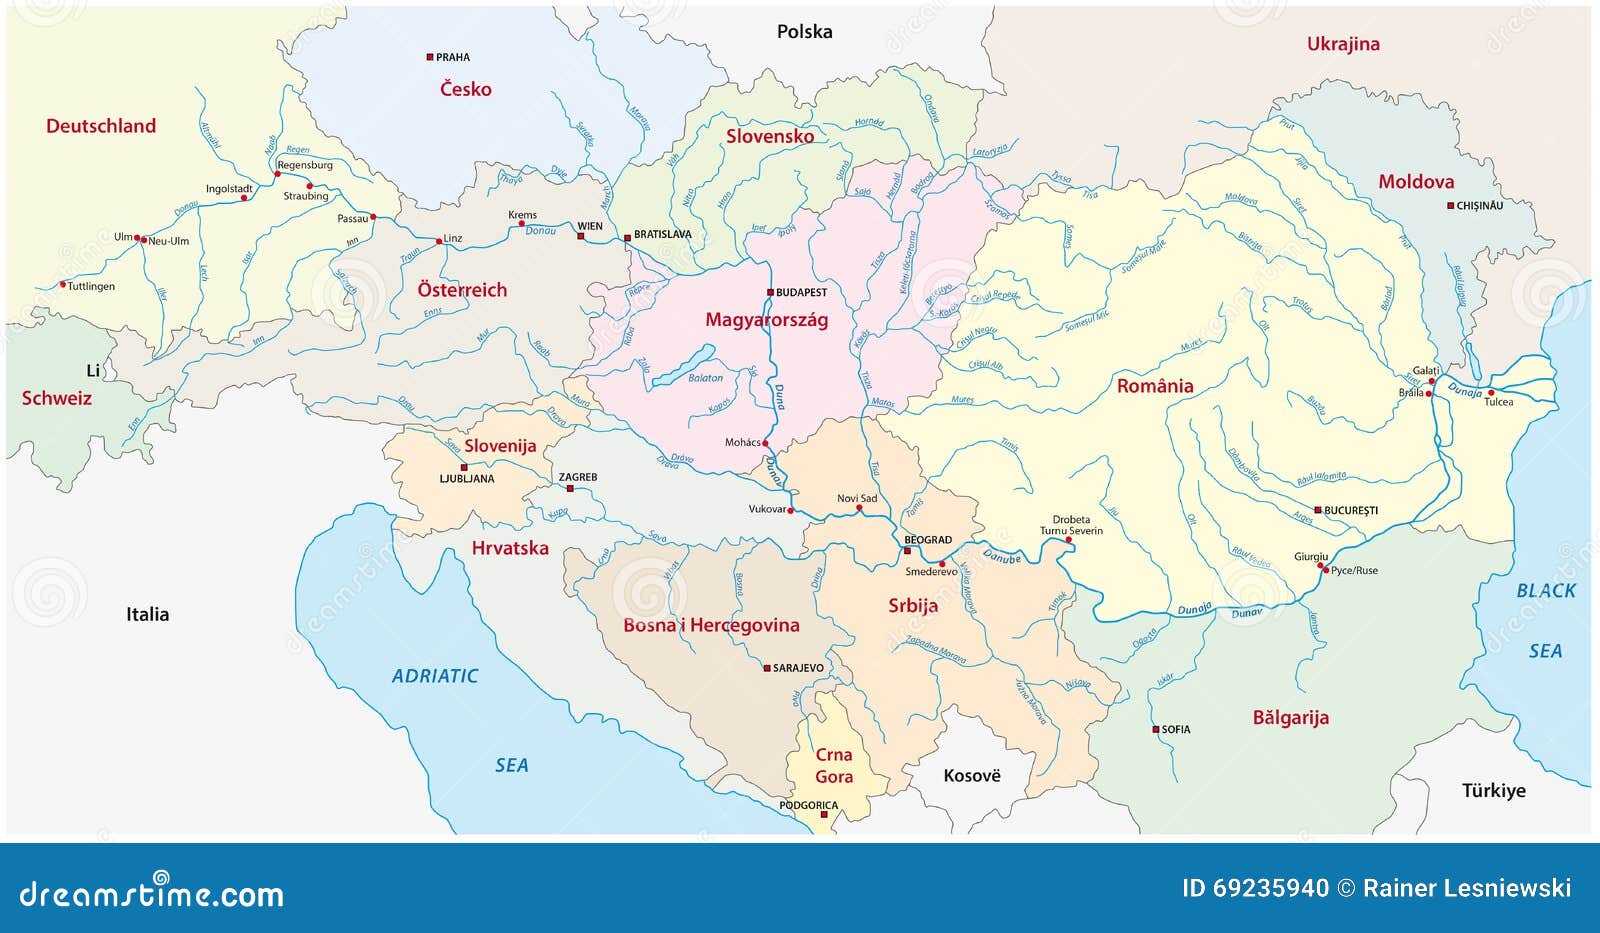 Дунай река бассейн какого океана. Река Дунай на карте. Дунай на карте России. Дунай река на карте через какие страны.